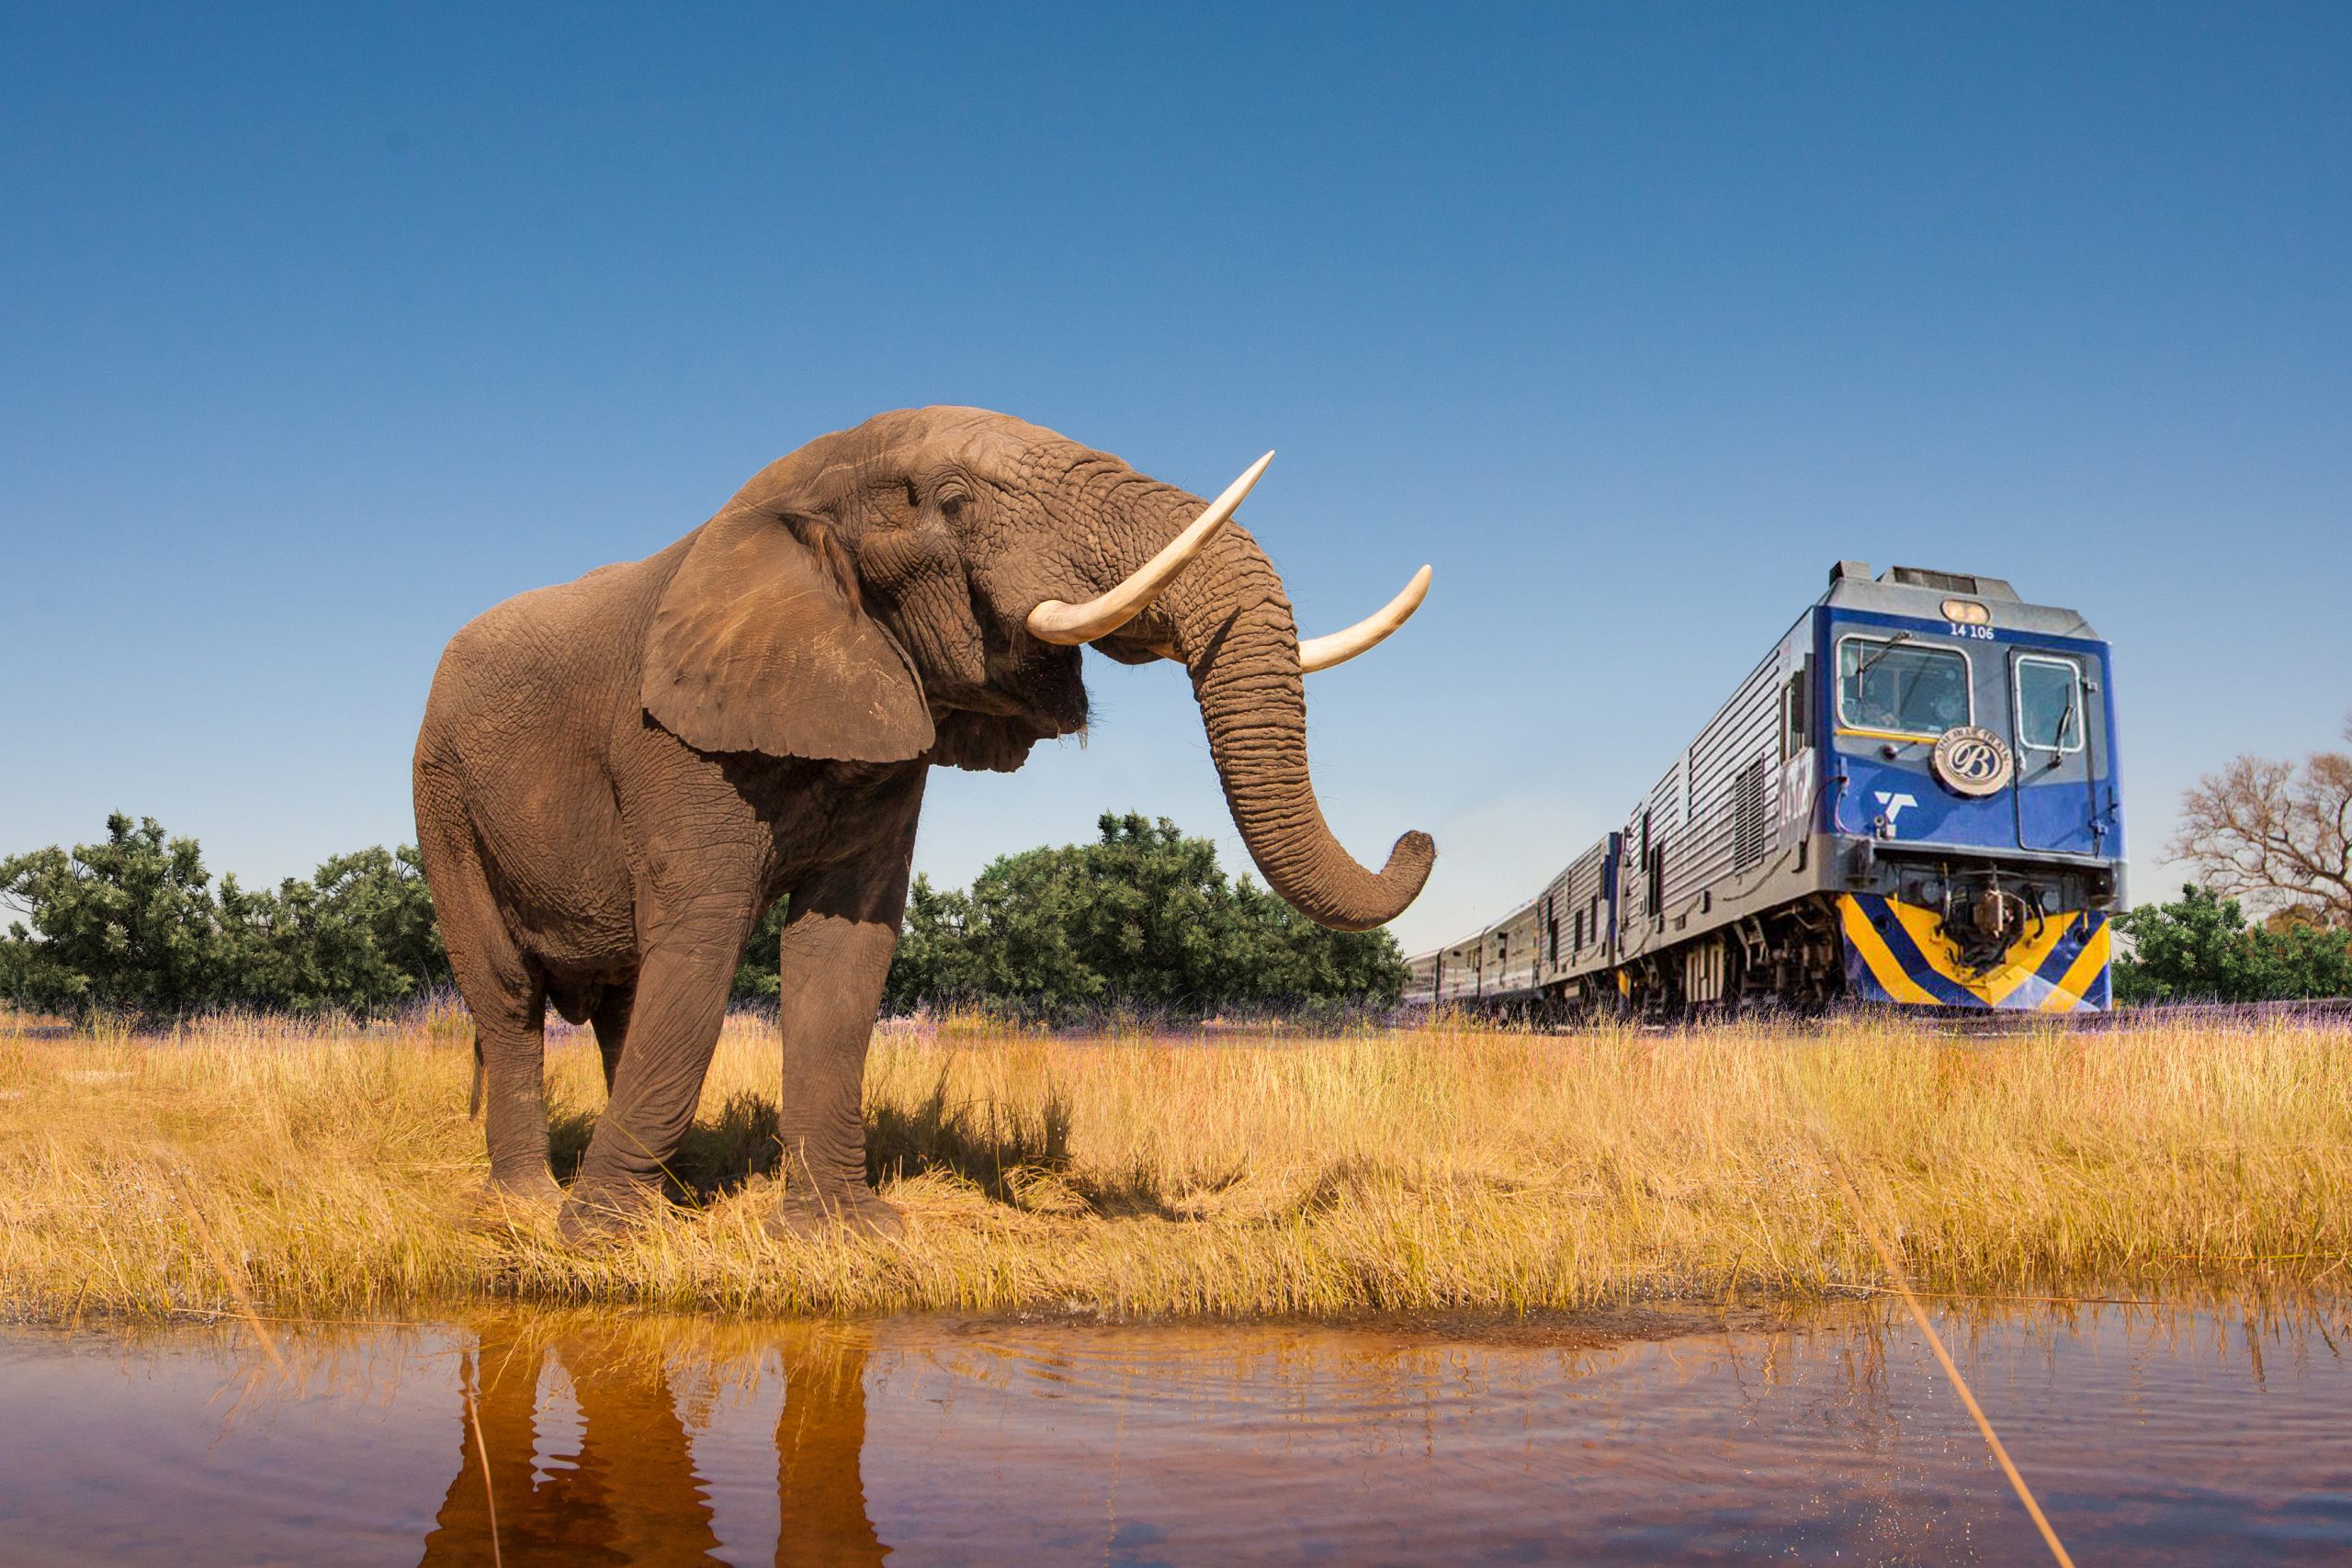 Elephant Rail and Train